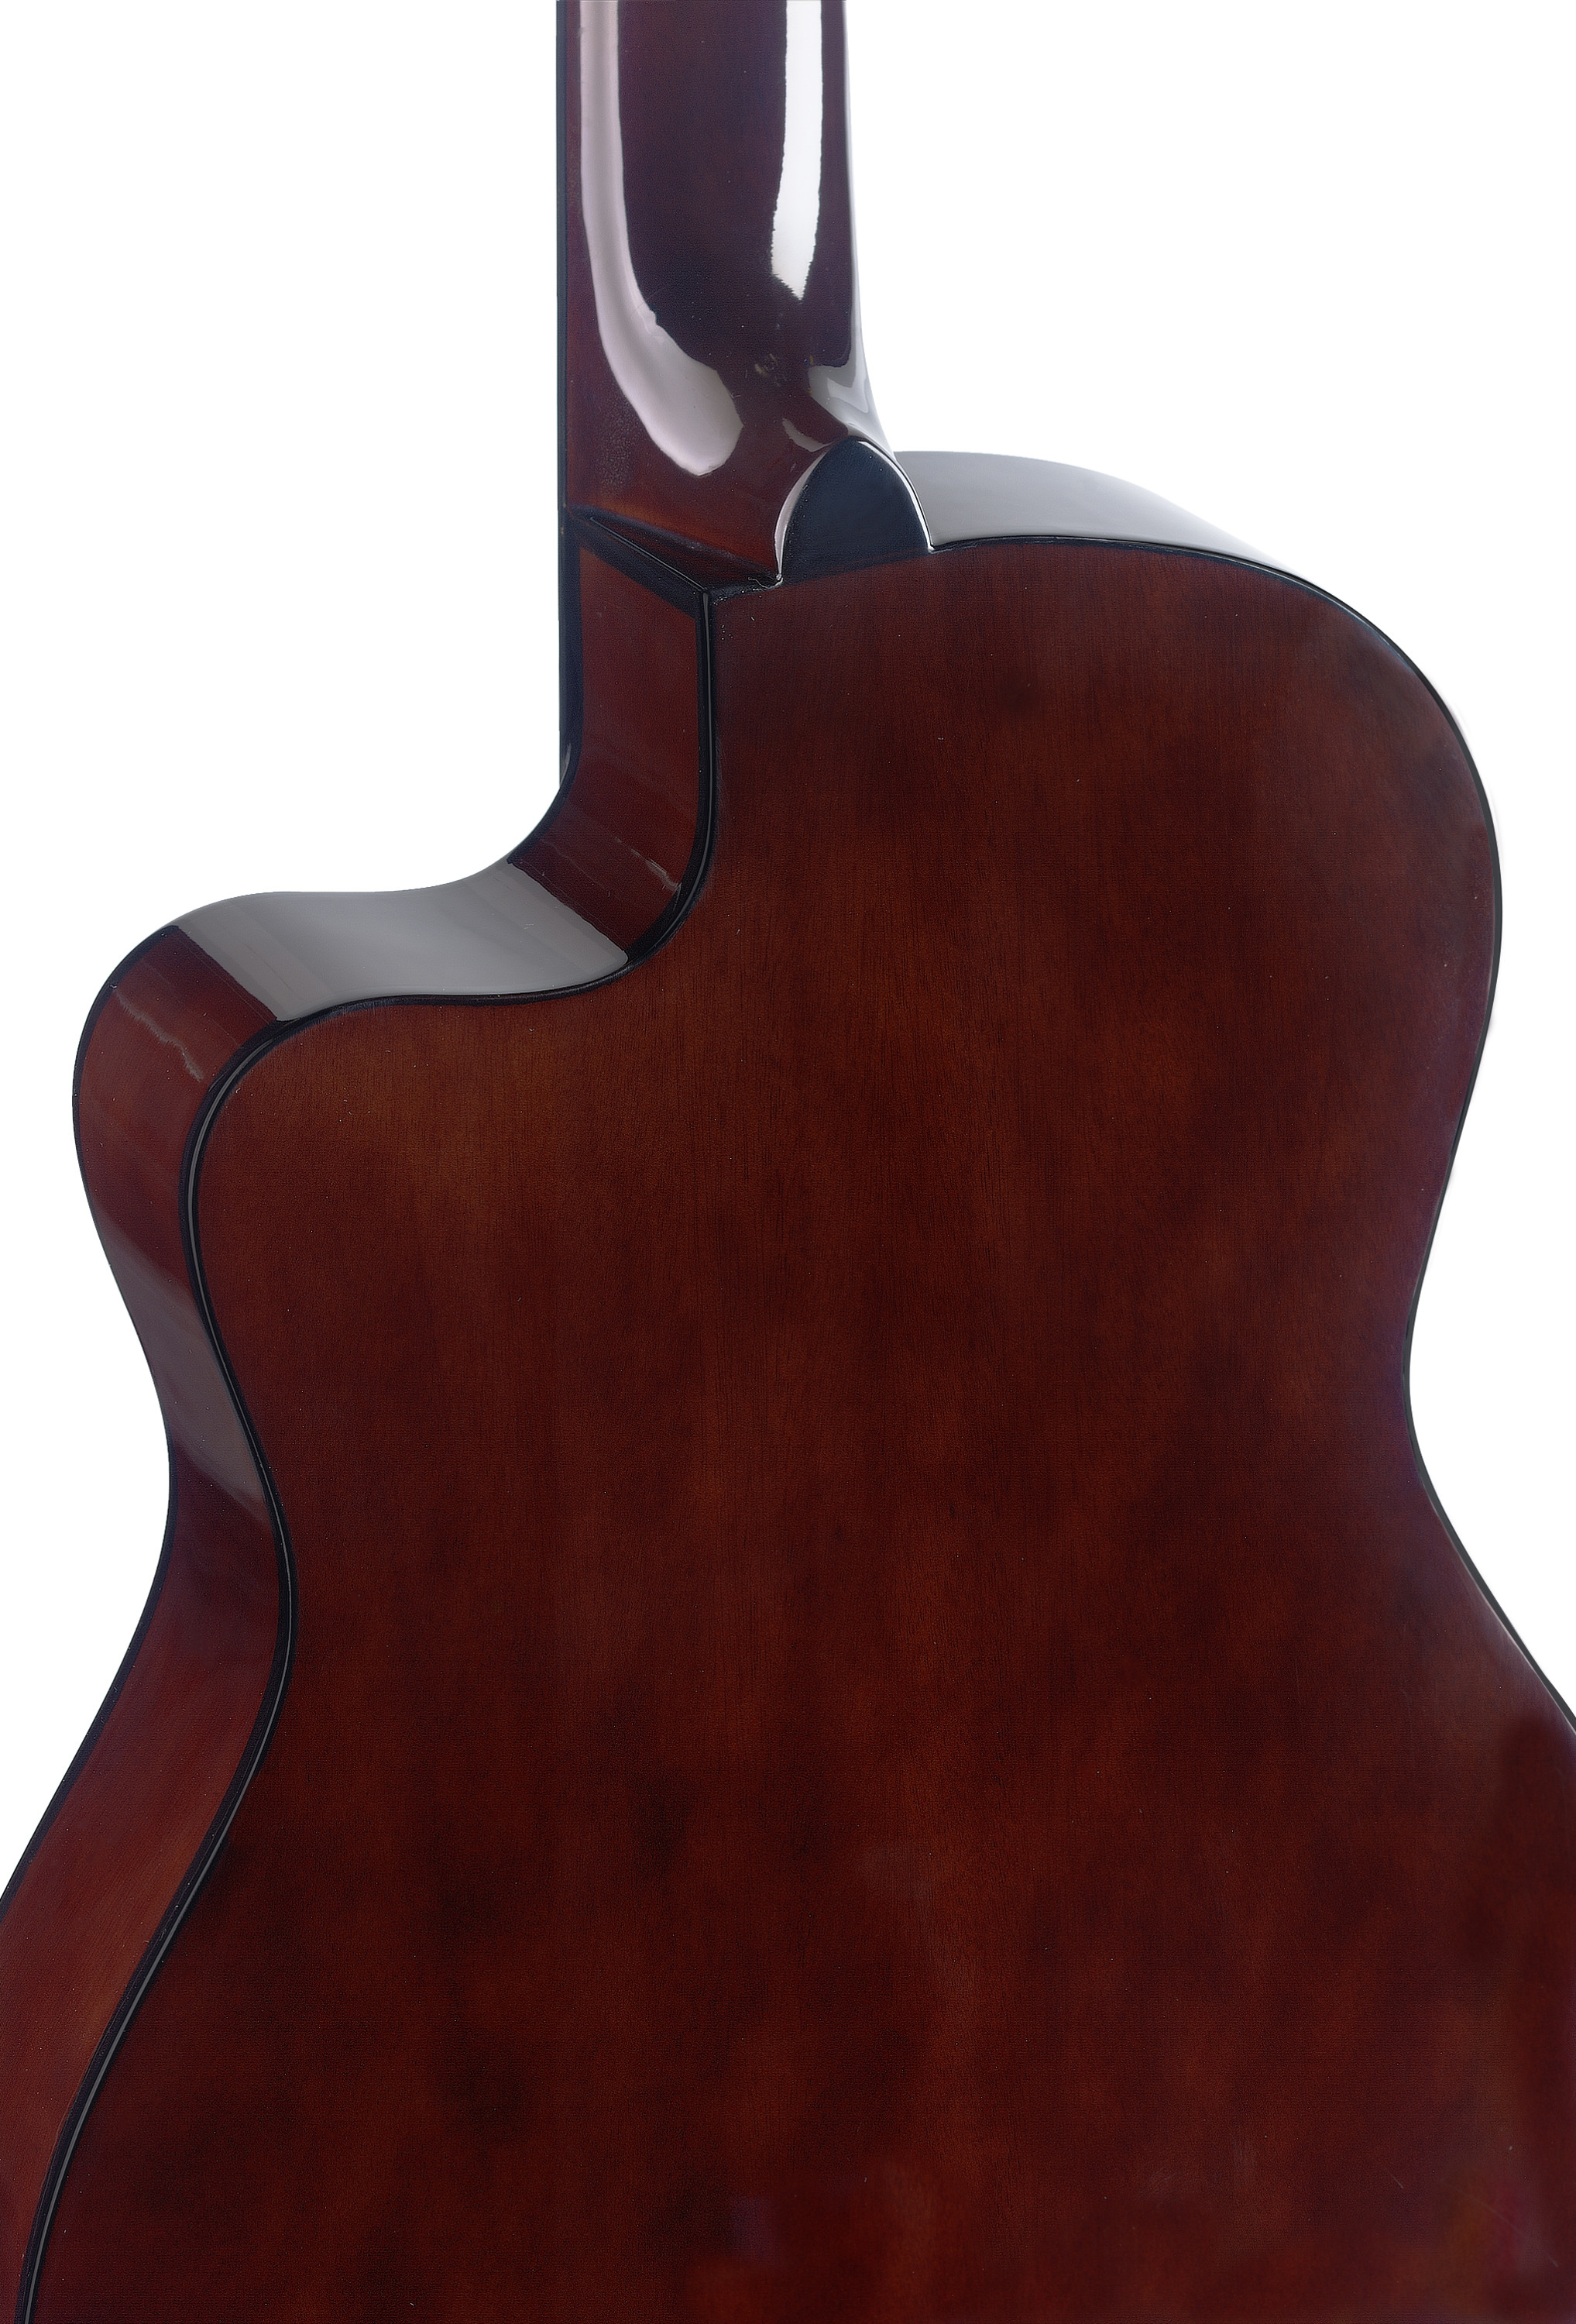 Stagg C546tce Nt Cw Epicea Catalpa - Natural - Klassieke gitaar 4/4 - Variation 1